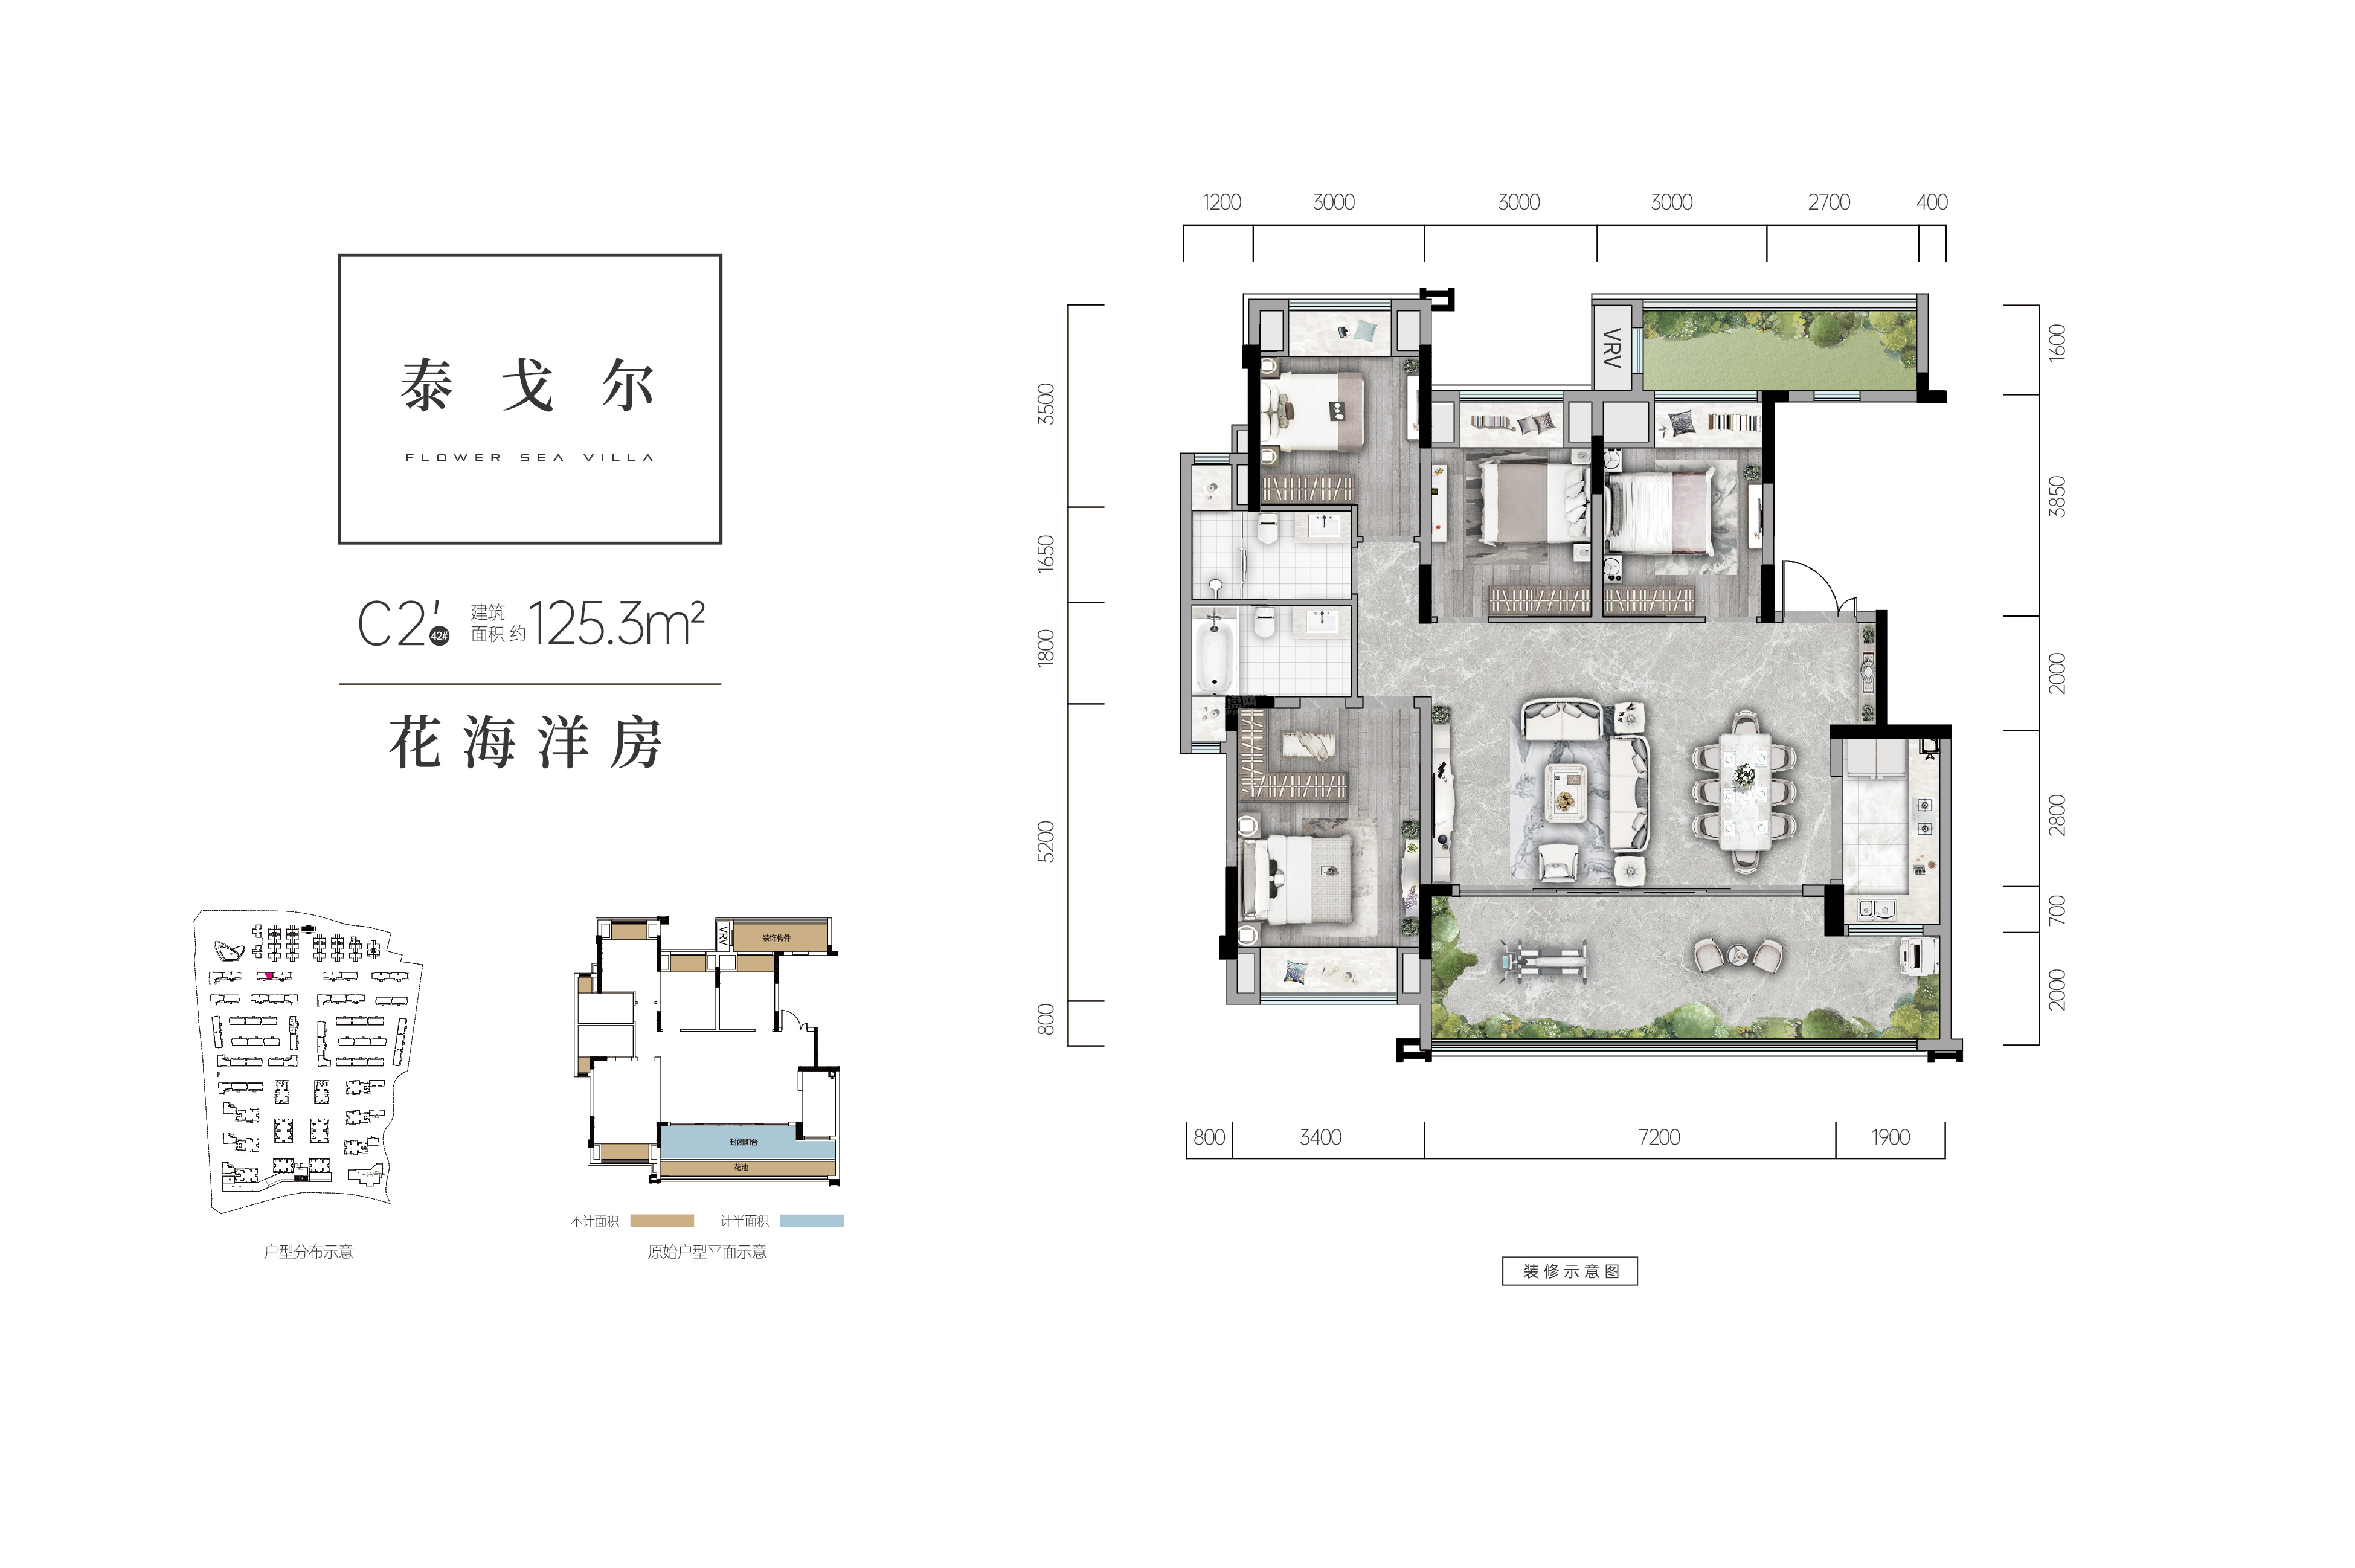 惠州中洲天御5室2厅2卫户型图-惠州楼盘网